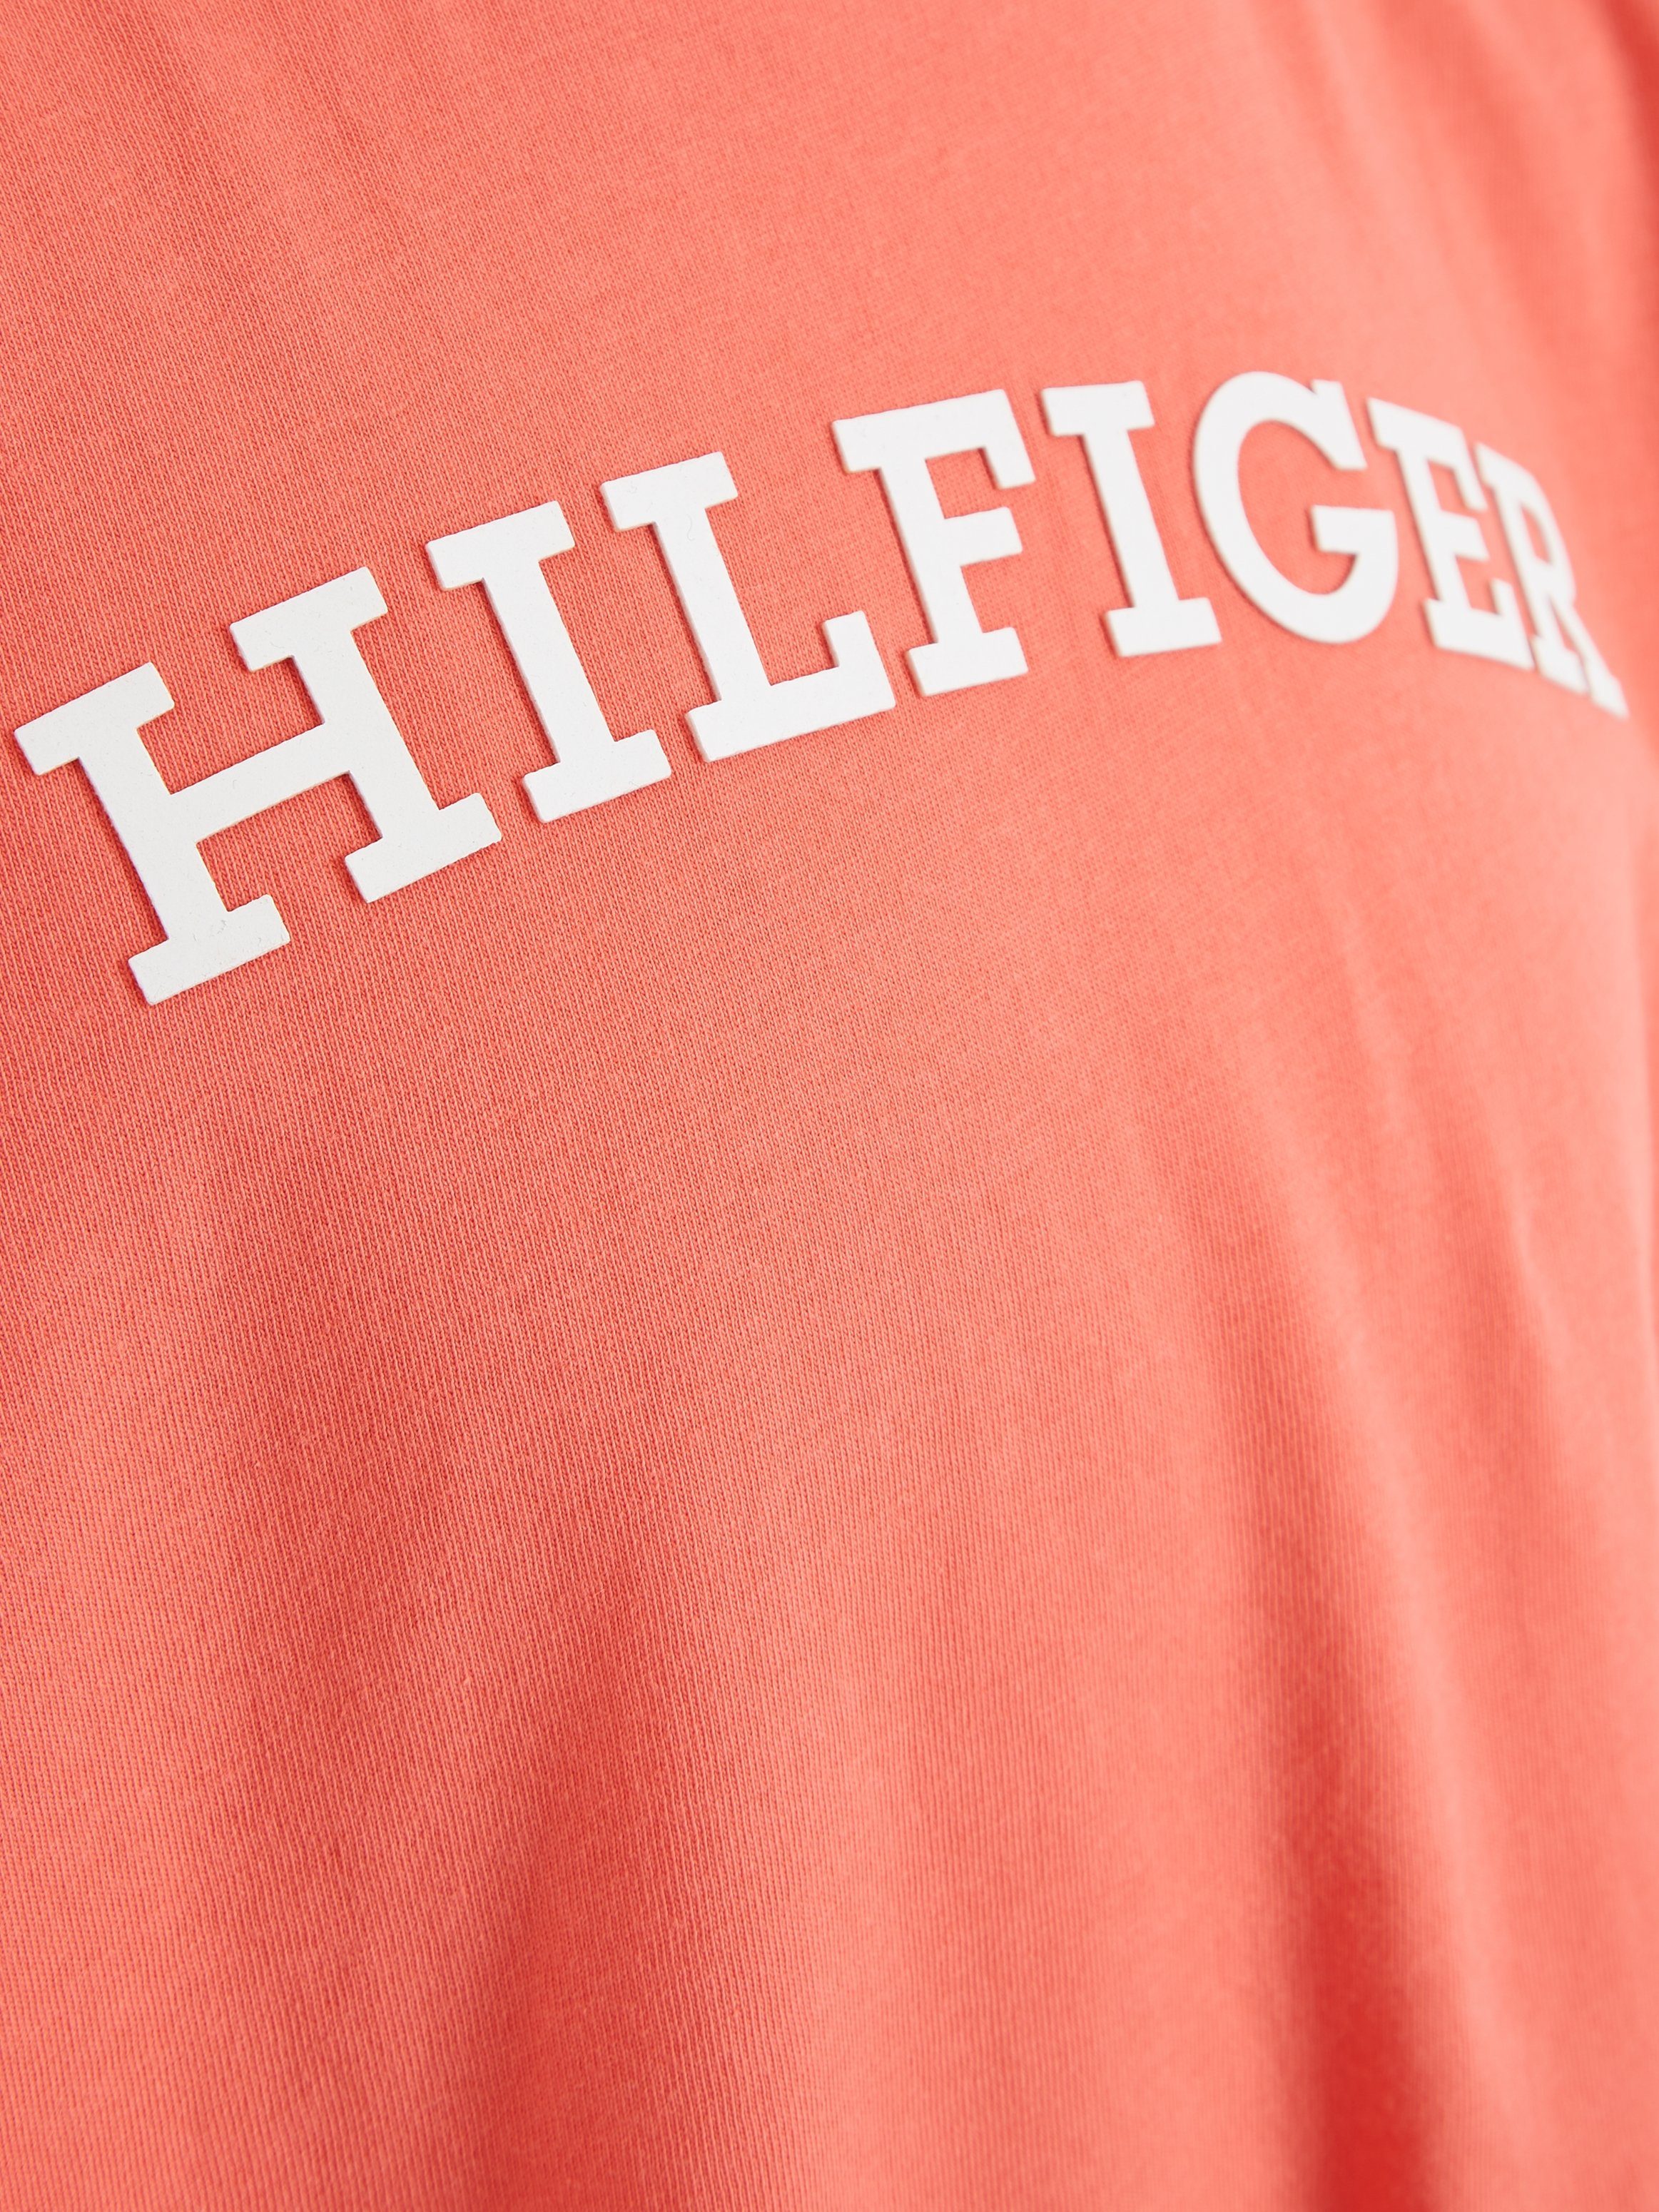 TEE mit Brust S/S der MONOTYPE koralle modischem T-Shirt Tommy Hilfiger Hilfiger-Logoschriftzug auf